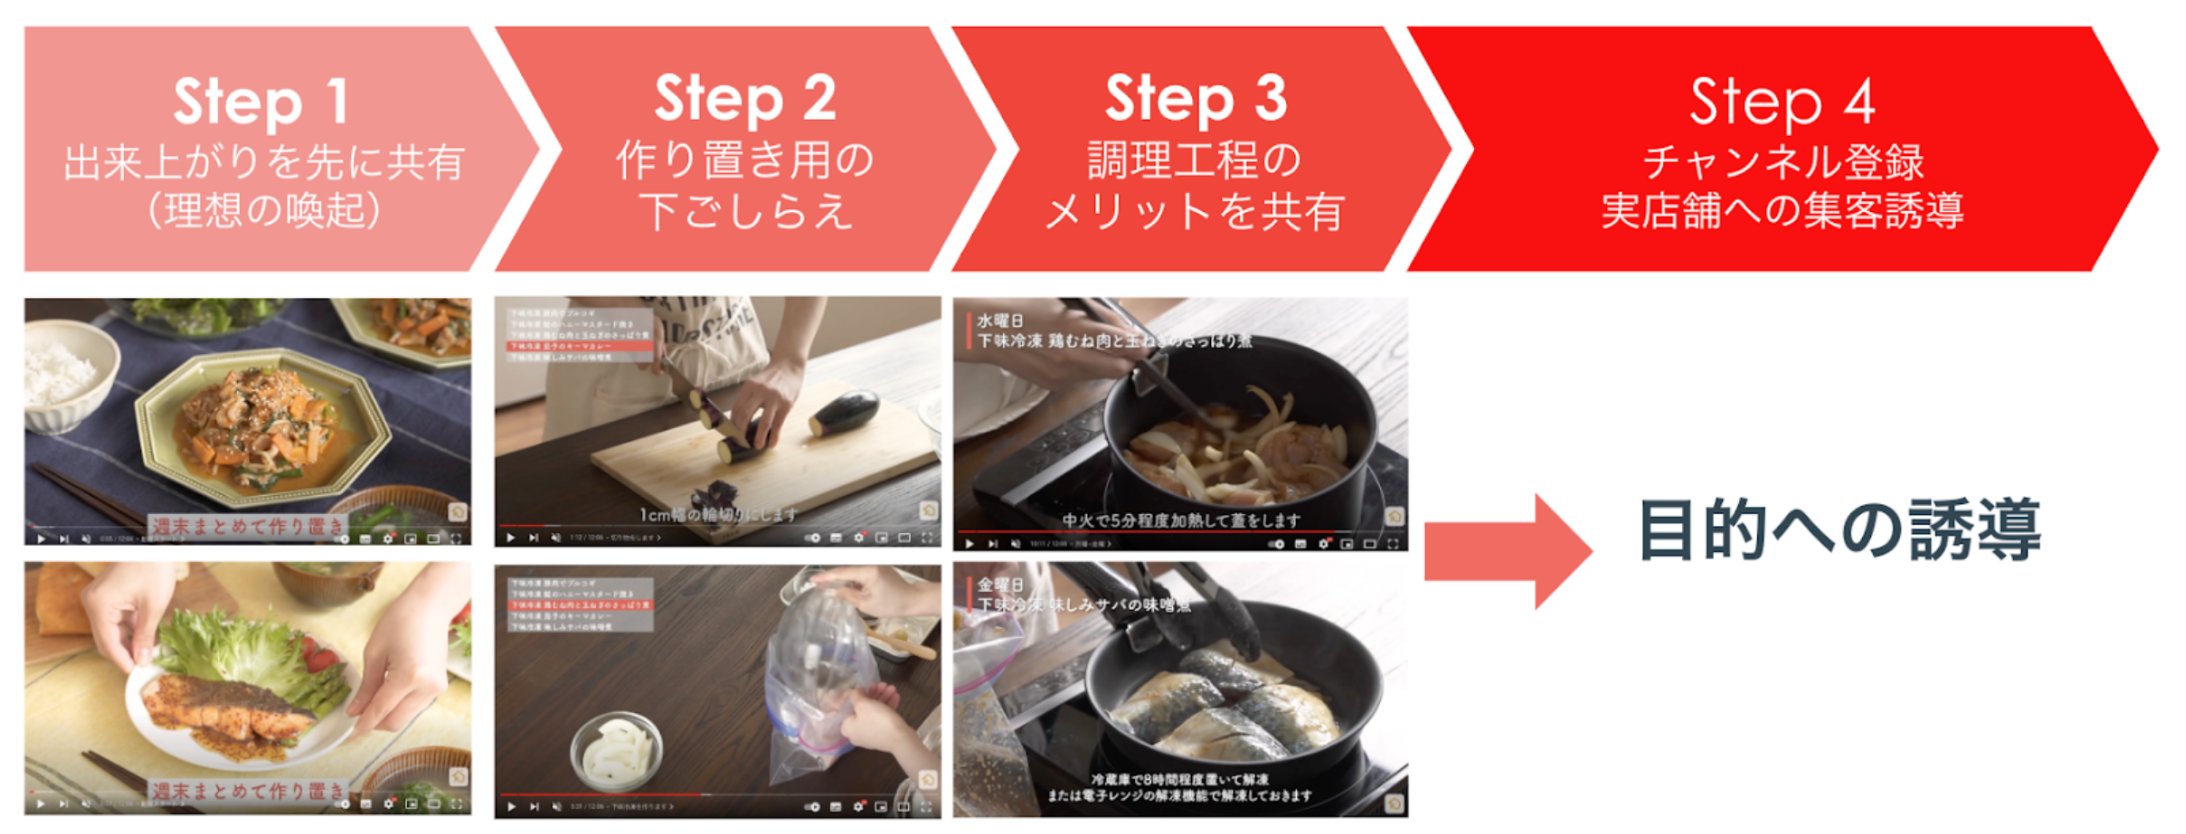 料理系チャンネルの動画構成設計の例